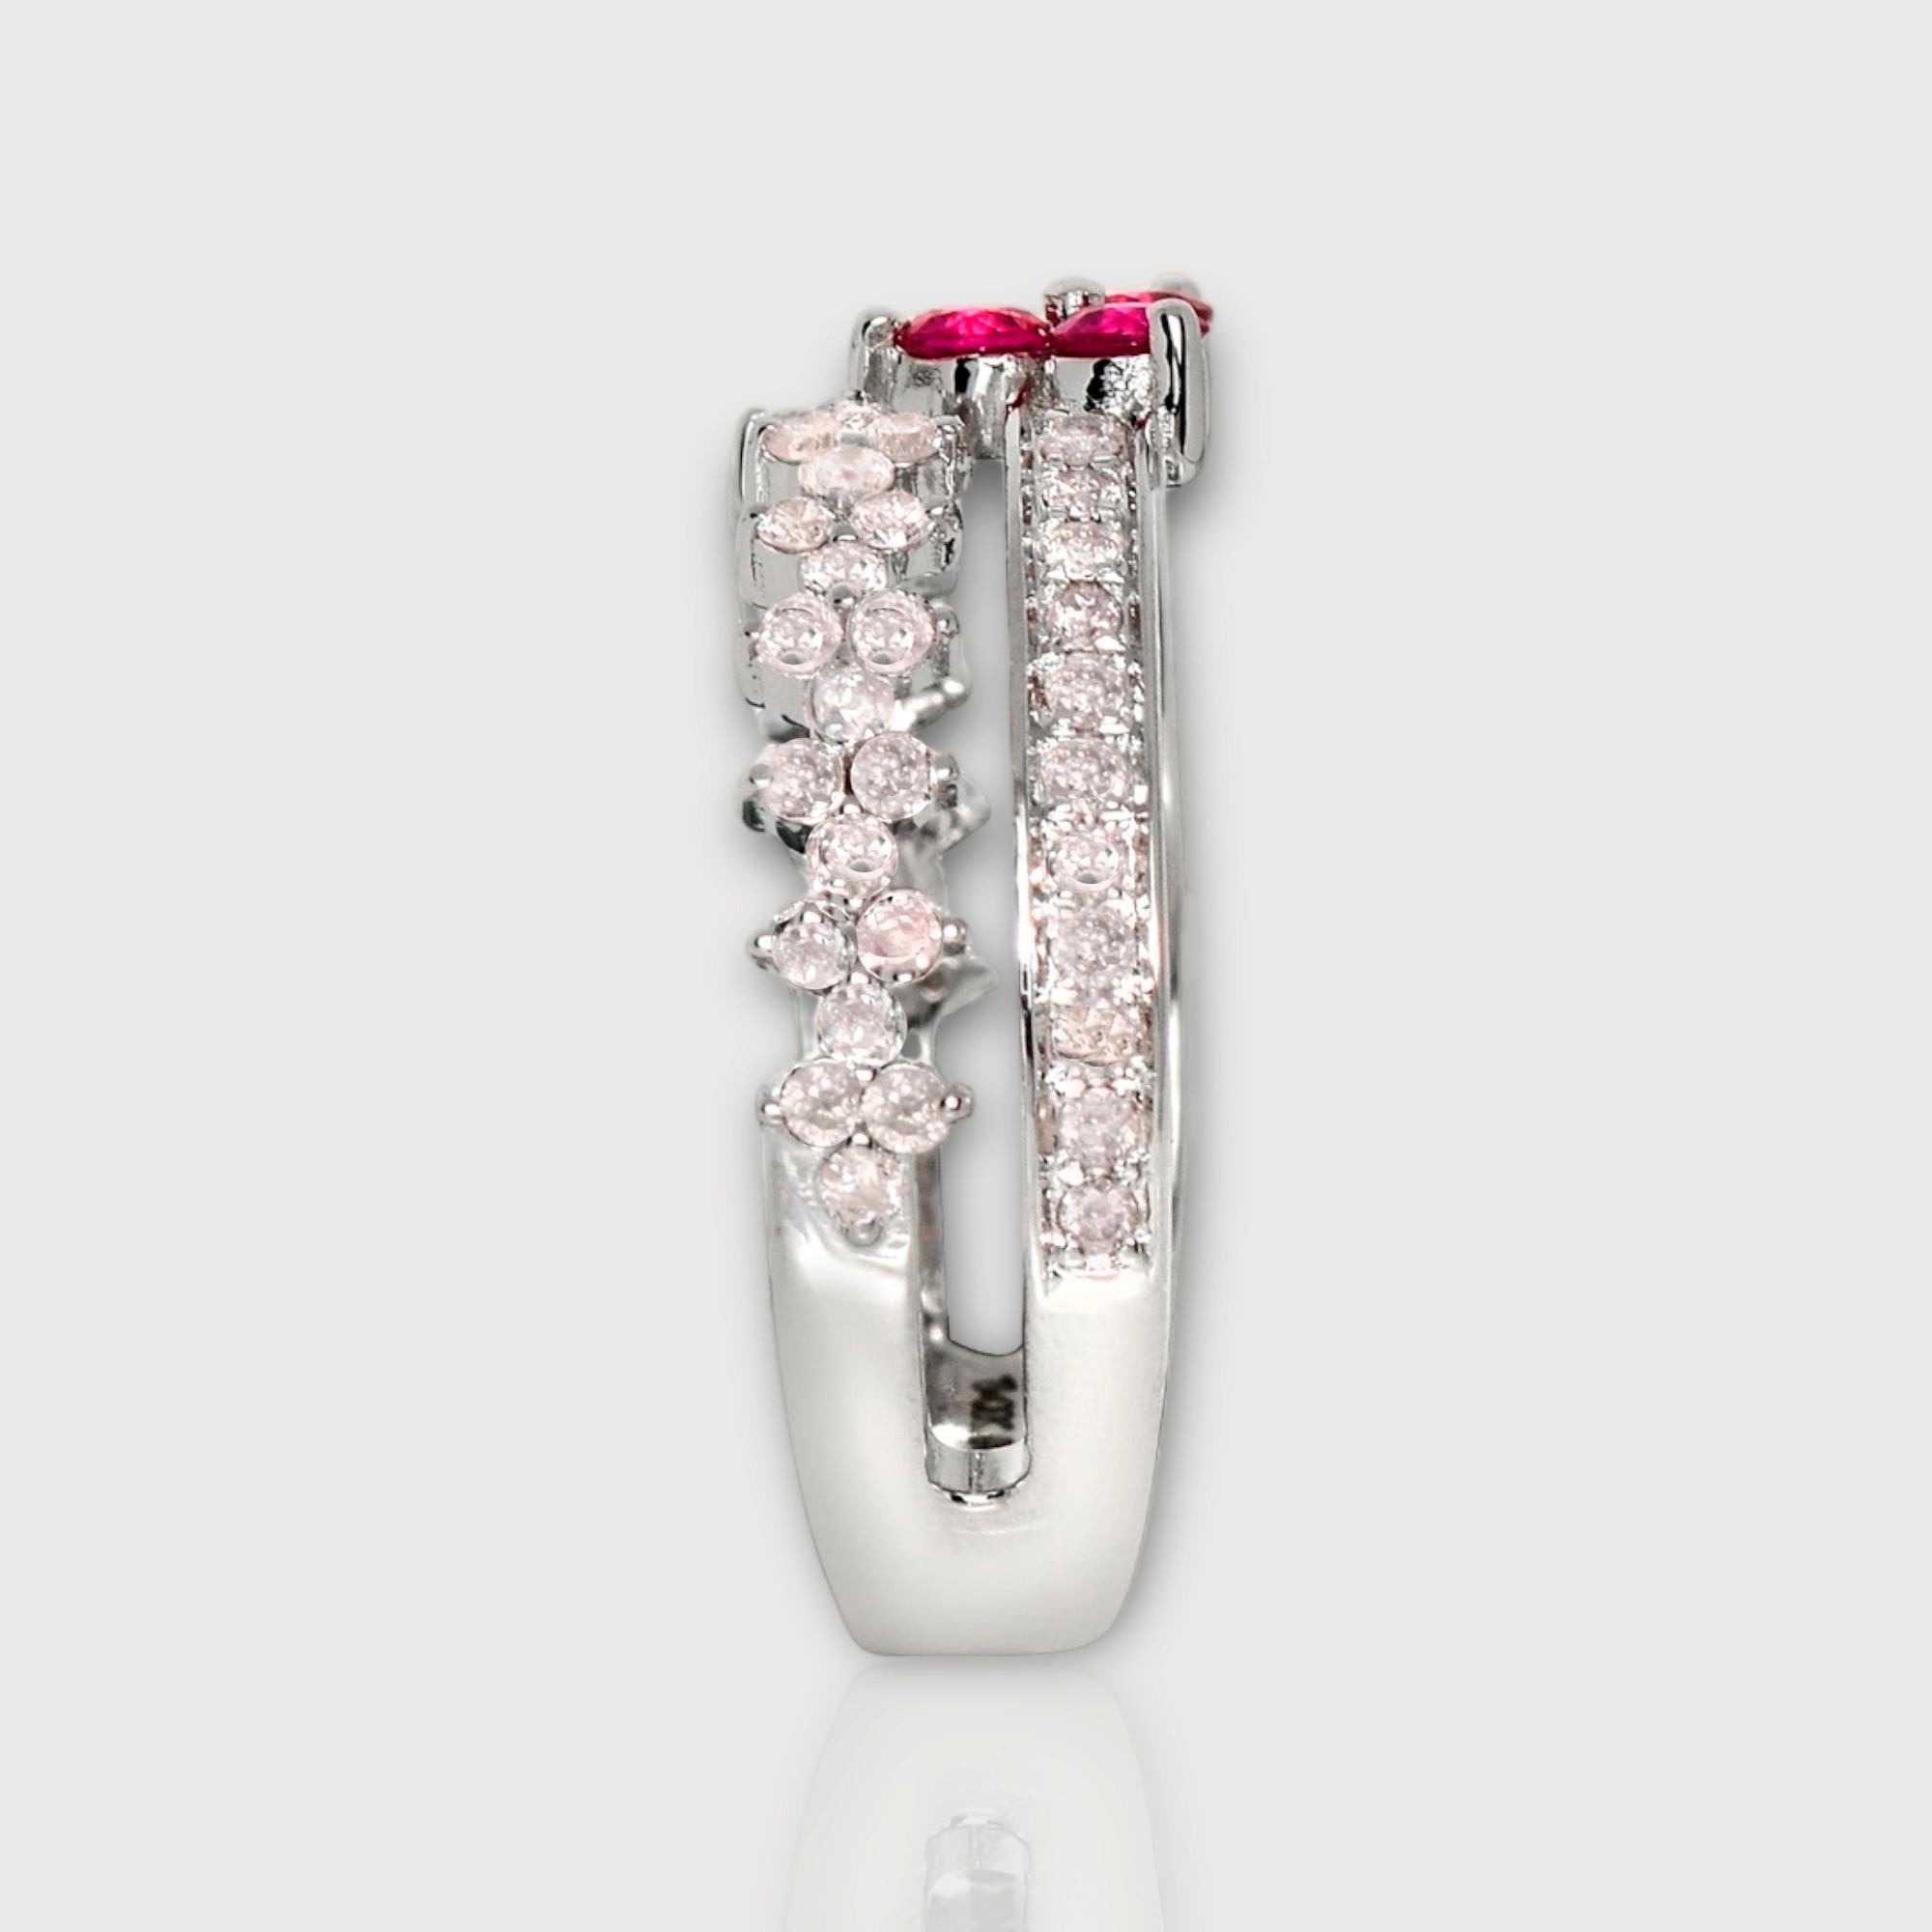 IGI 14K 0.55 ct Natural Pink Diamonds&Ruby Vintage Engagement Ring For Sale 1